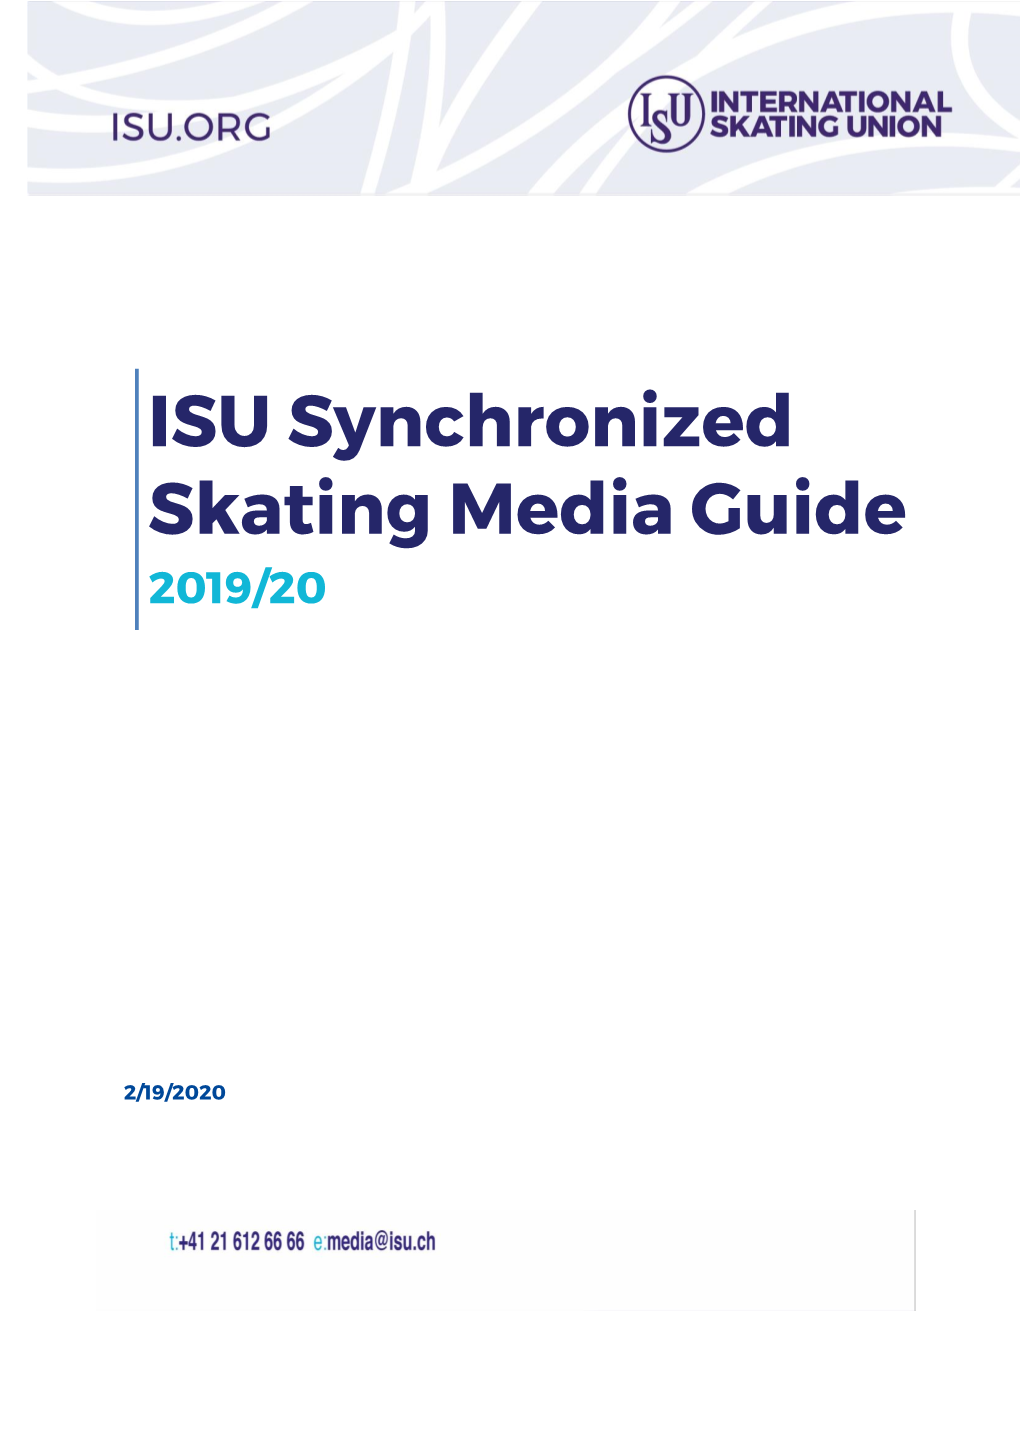 ISU Synchronized Skating Media Guide 2019/20